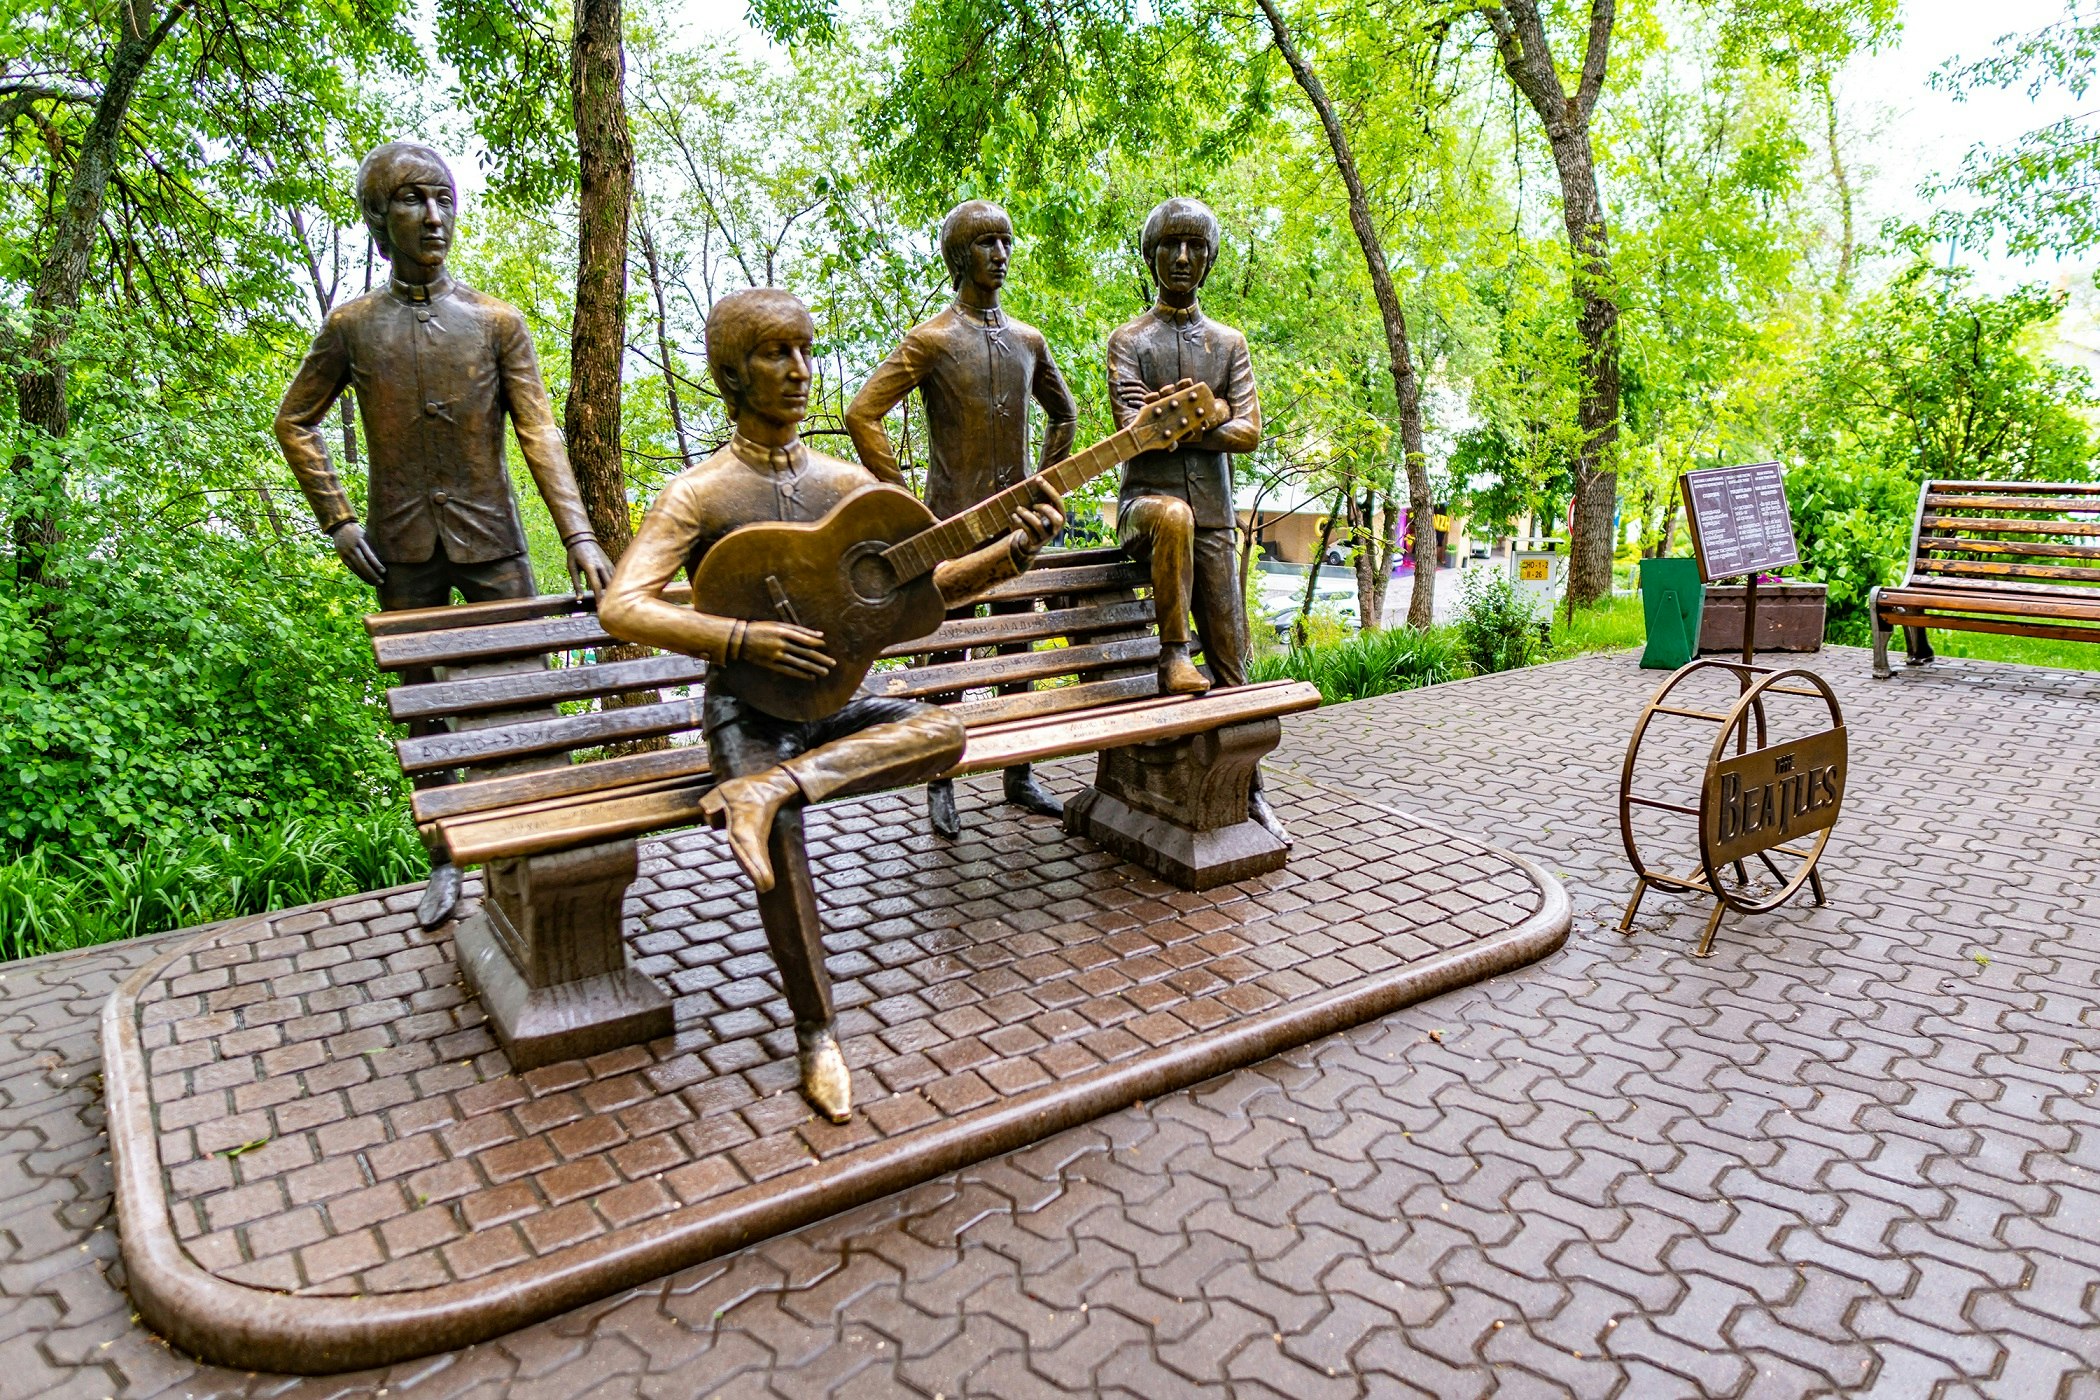 En bronsstaty av det brittiska rockbandet The Beatles i Kok Tobes nöjespark på en kulle.  De fyra medlemmarna i bandet är naturliga och satt på och stod runt en bänk.